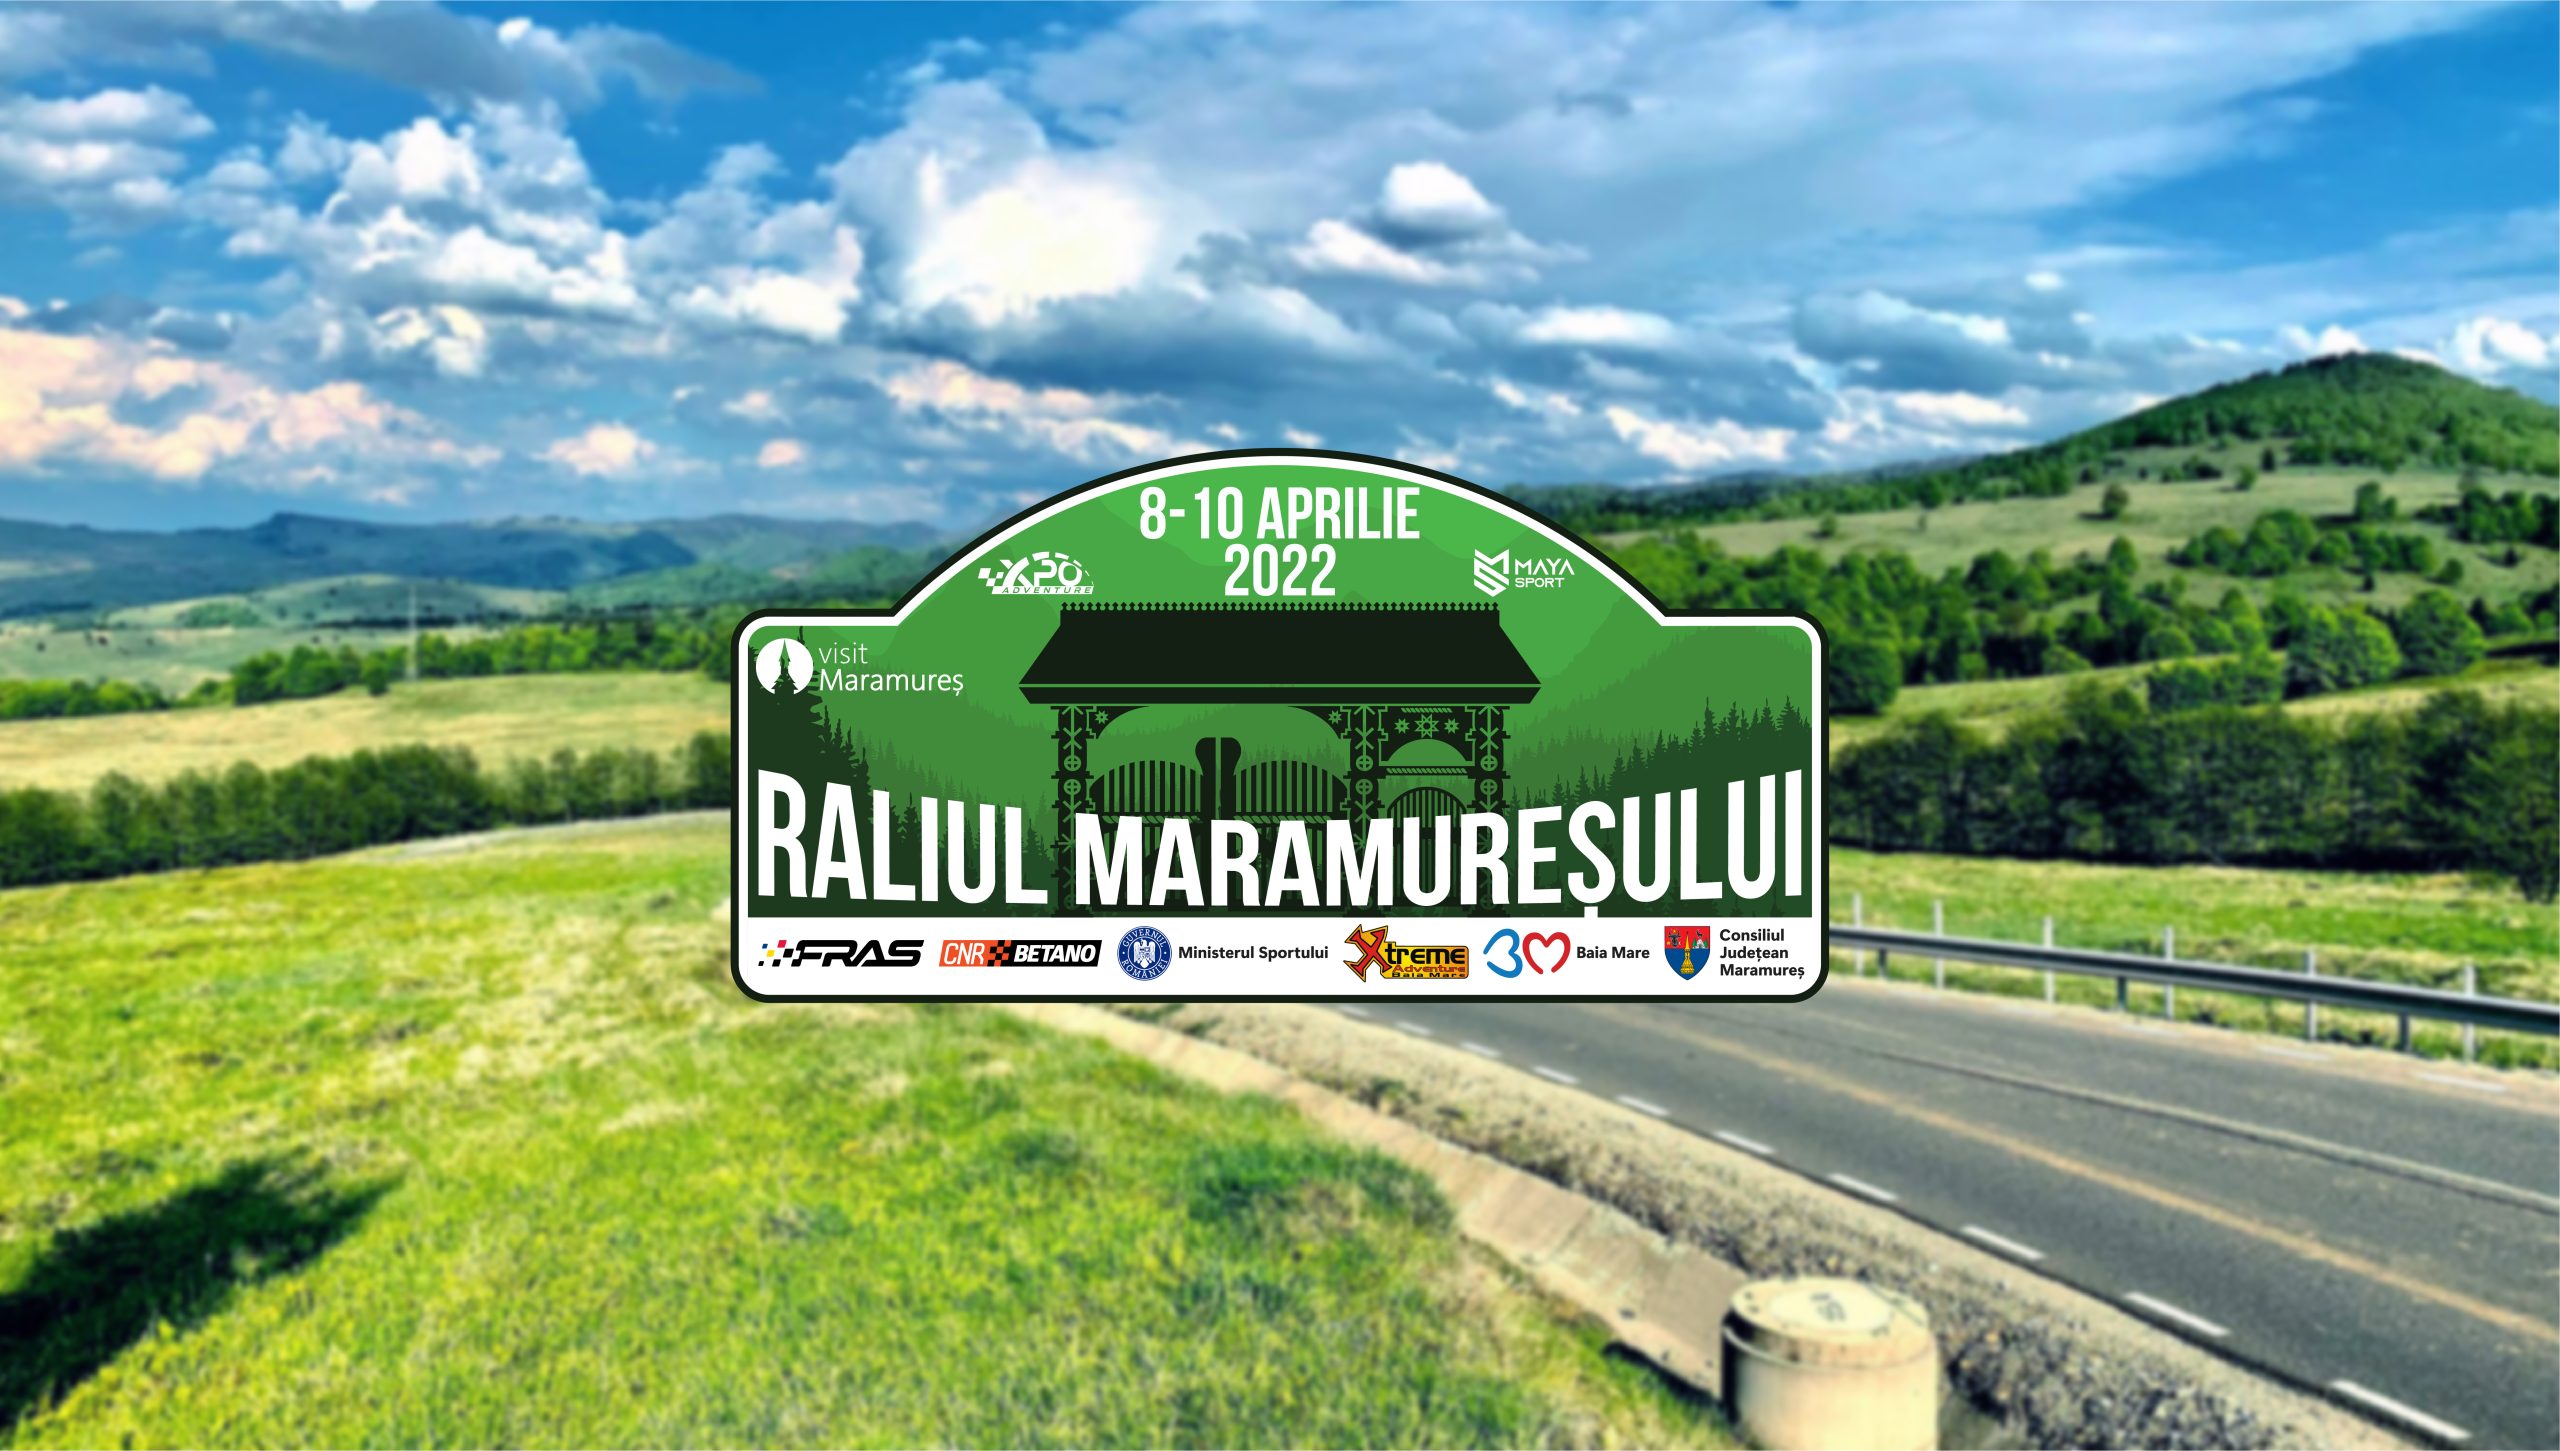 Raliul Maramuresului 2022 01 scaled